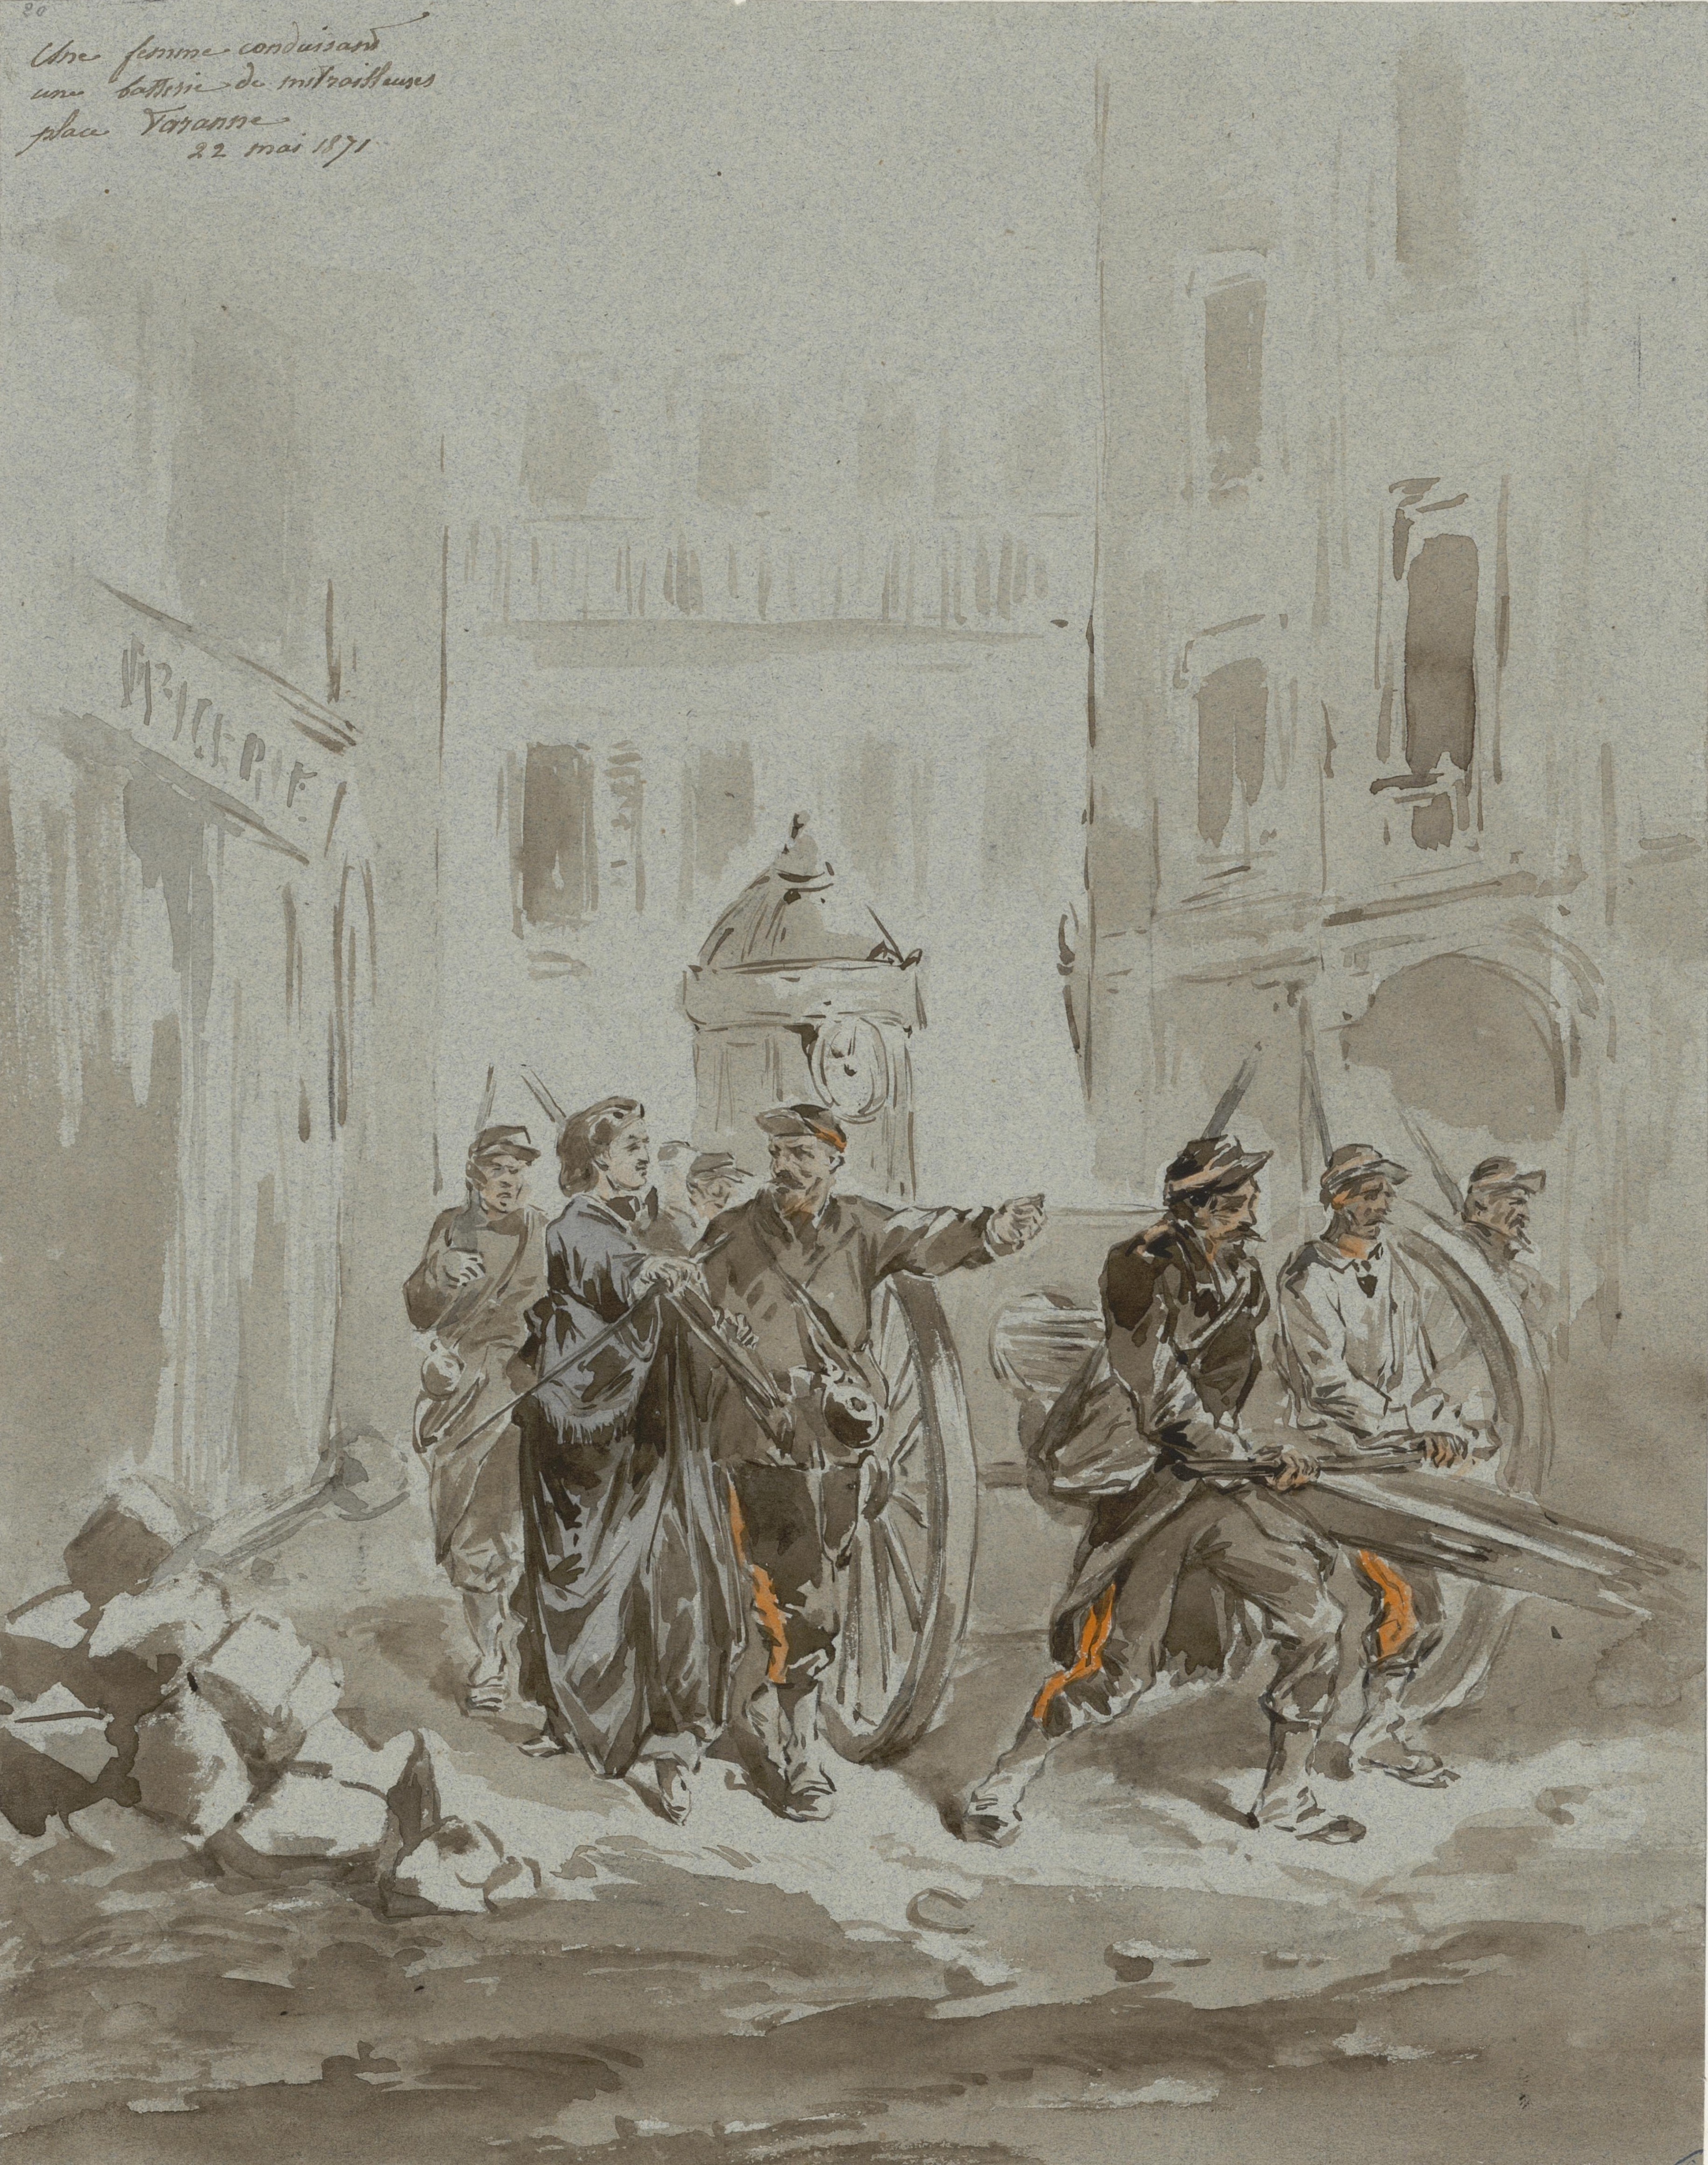 22 mai 1871 - Femme conduisant une mitrailleuse place Taranne, Paris VIe - Dessin de Sahib (Le Monde Illustré)